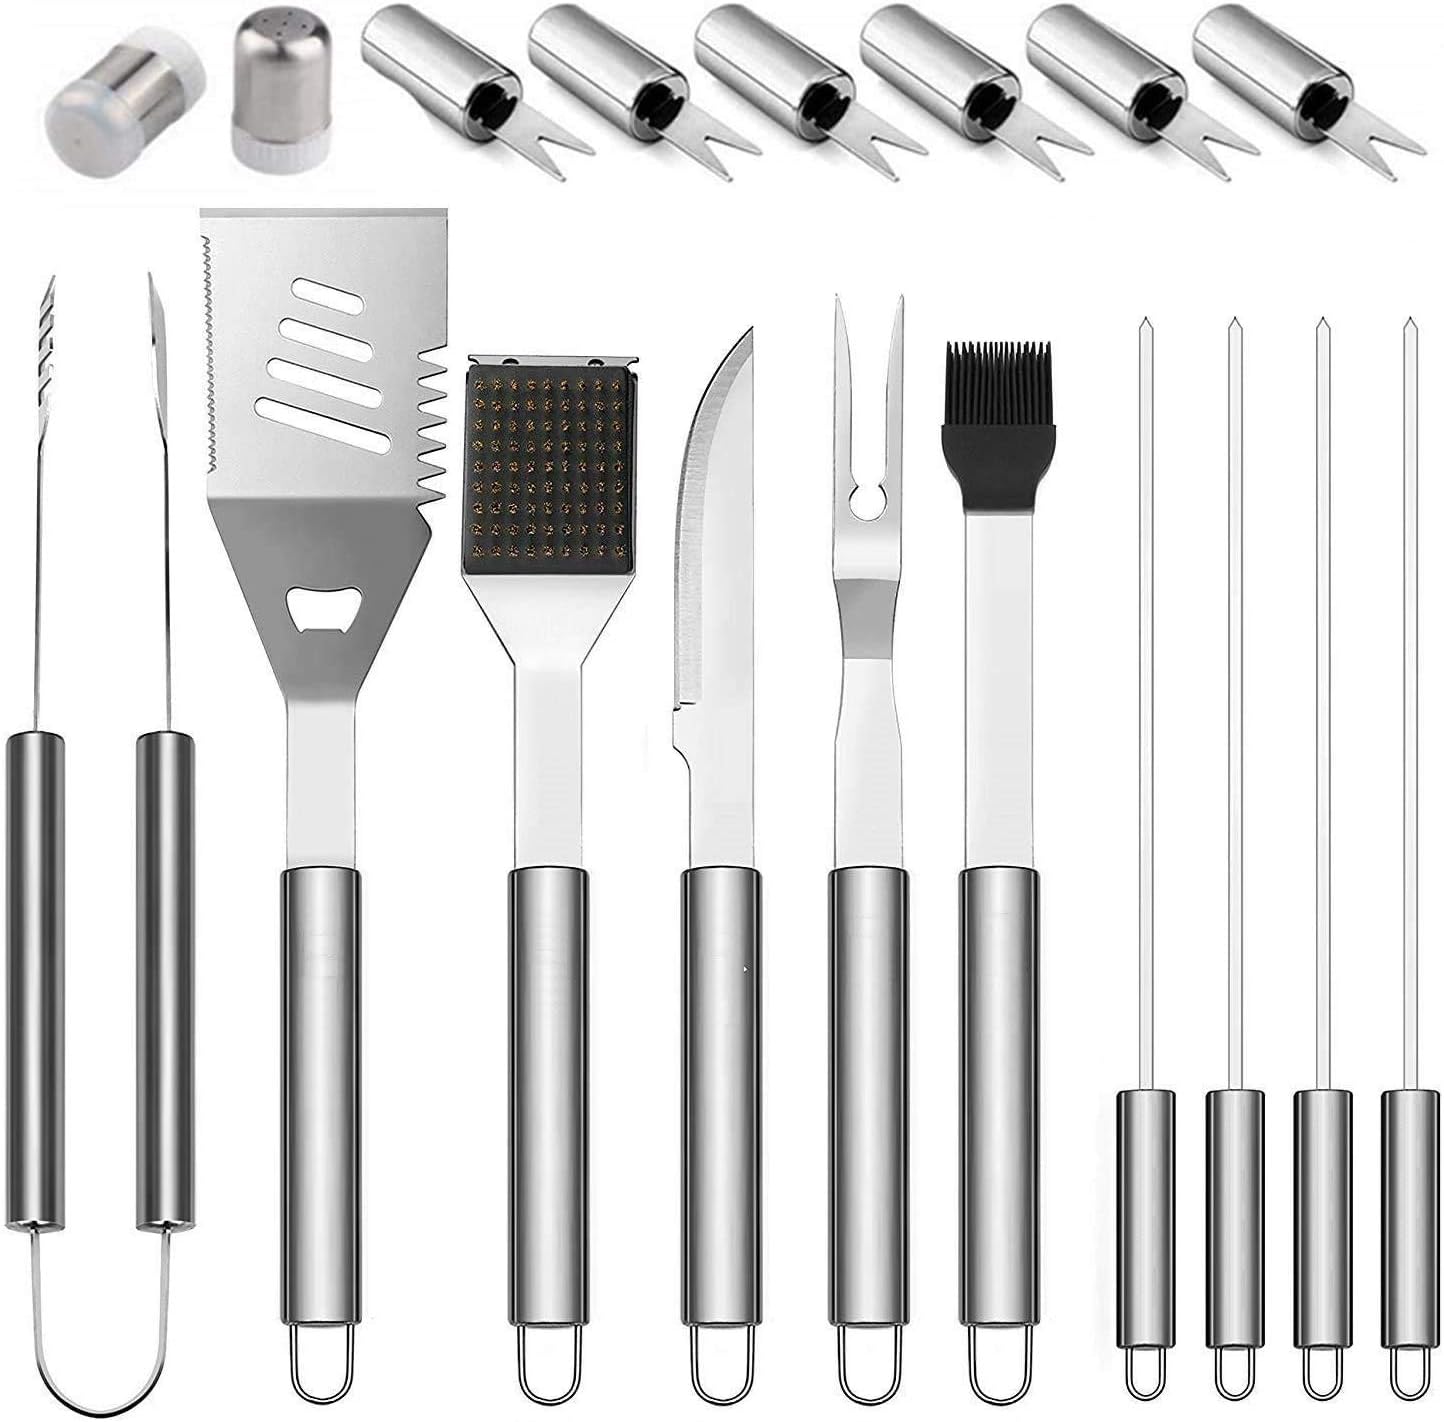 مجموعة أدوات لشواء مكونة من 18 قطعة، معدات طهي للشواية المسطحة